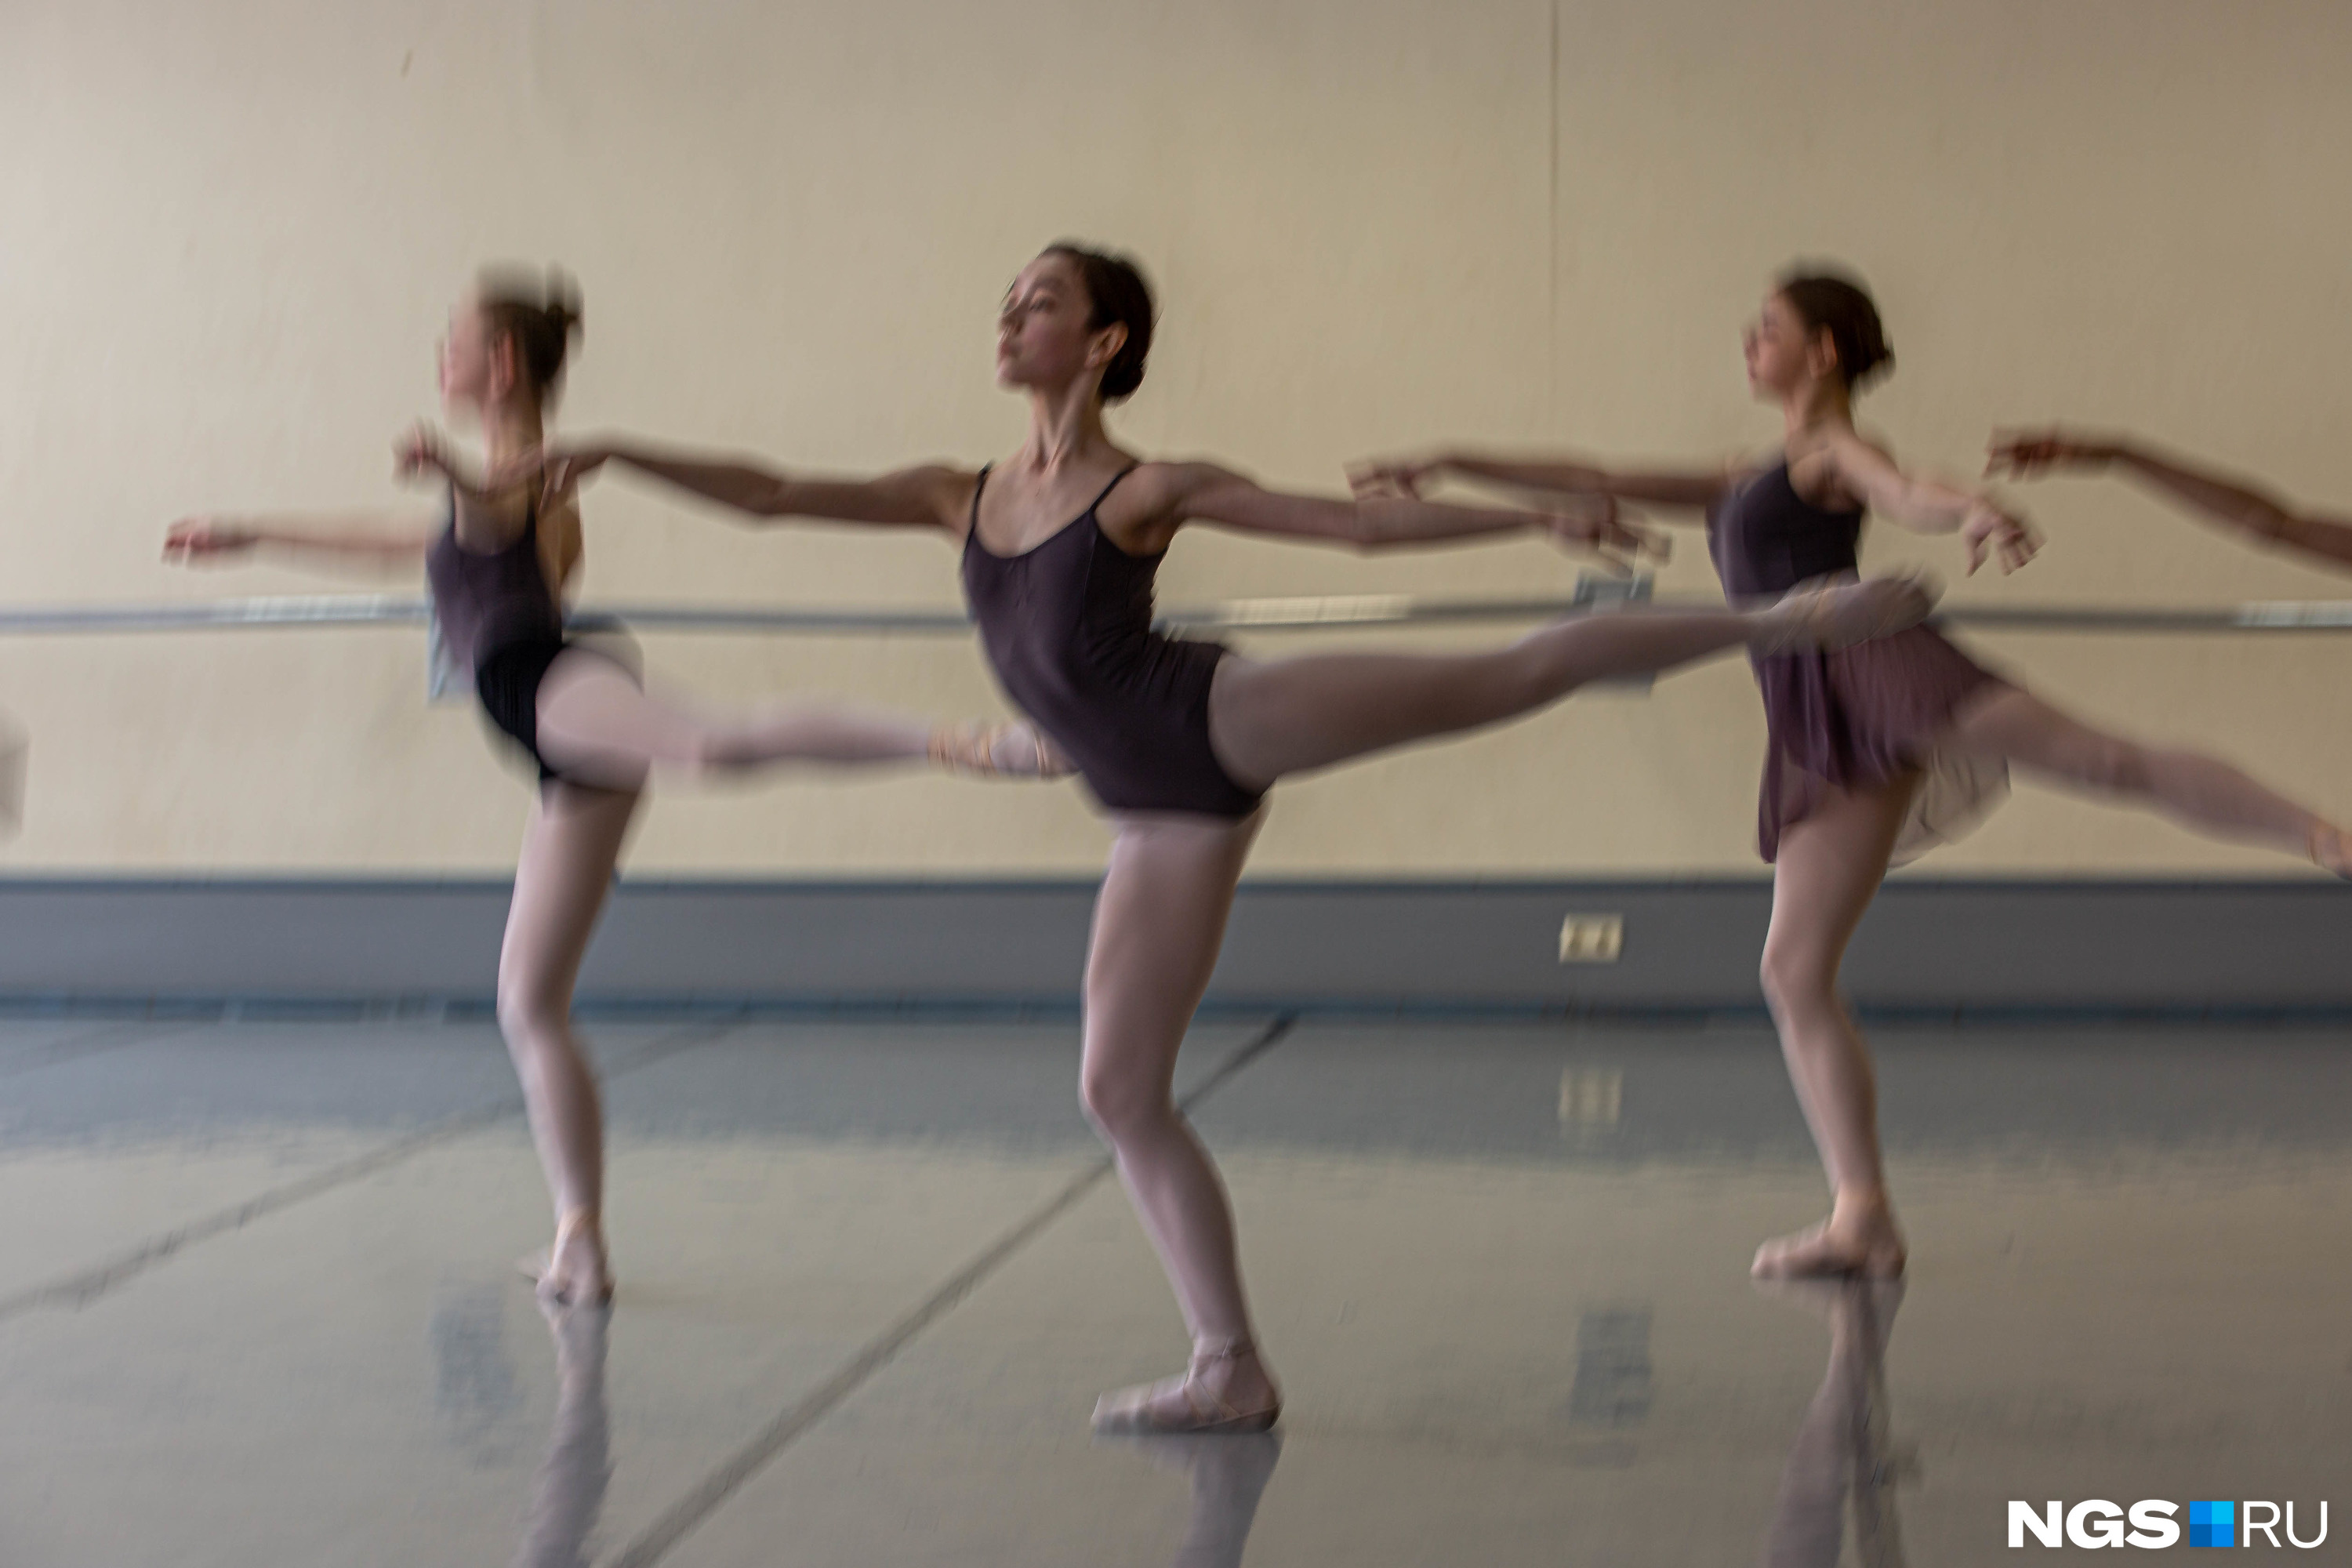 Координация — одно из самых важных качеств для балетного танцора, но на нужном уровне оно присуще далеко не всем